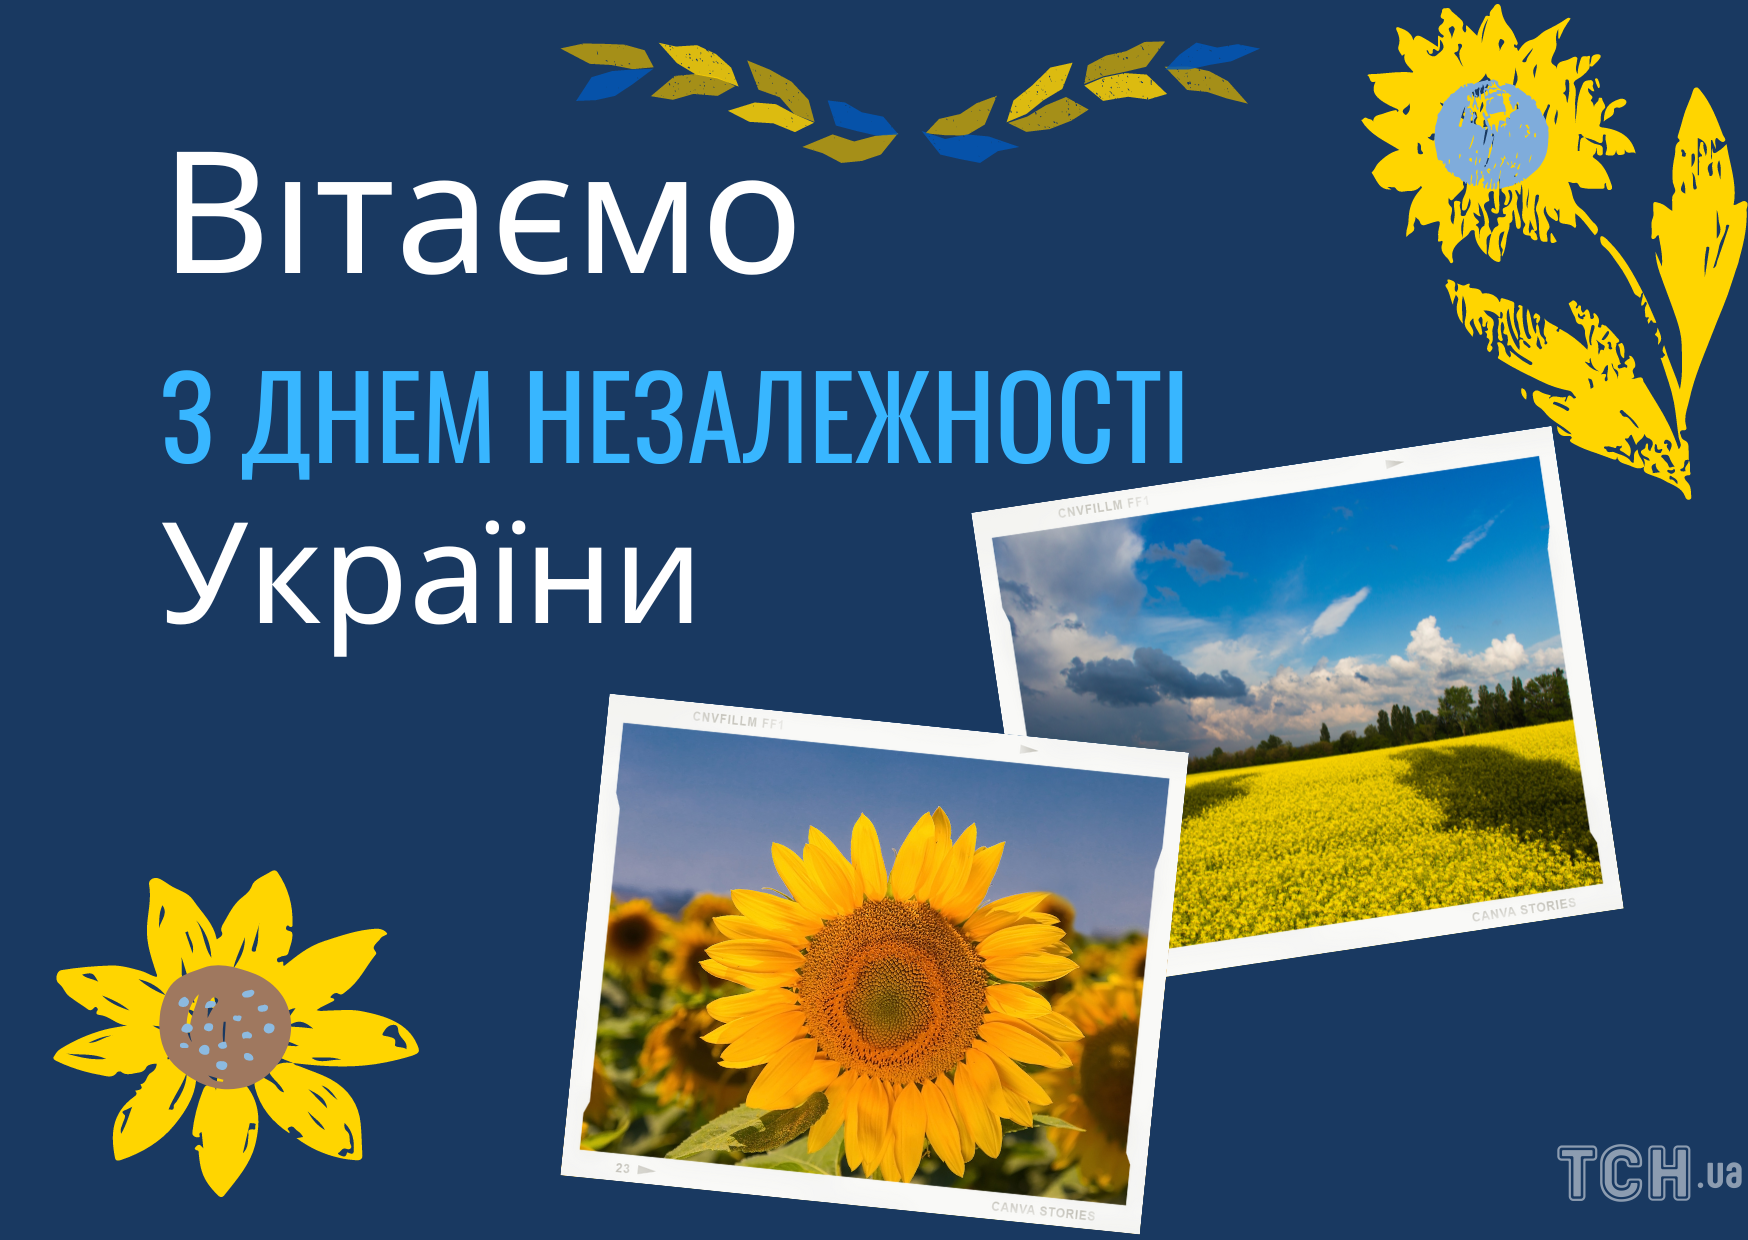 С Днем Независимости Украины: теплые поздравления защитникам на фронте